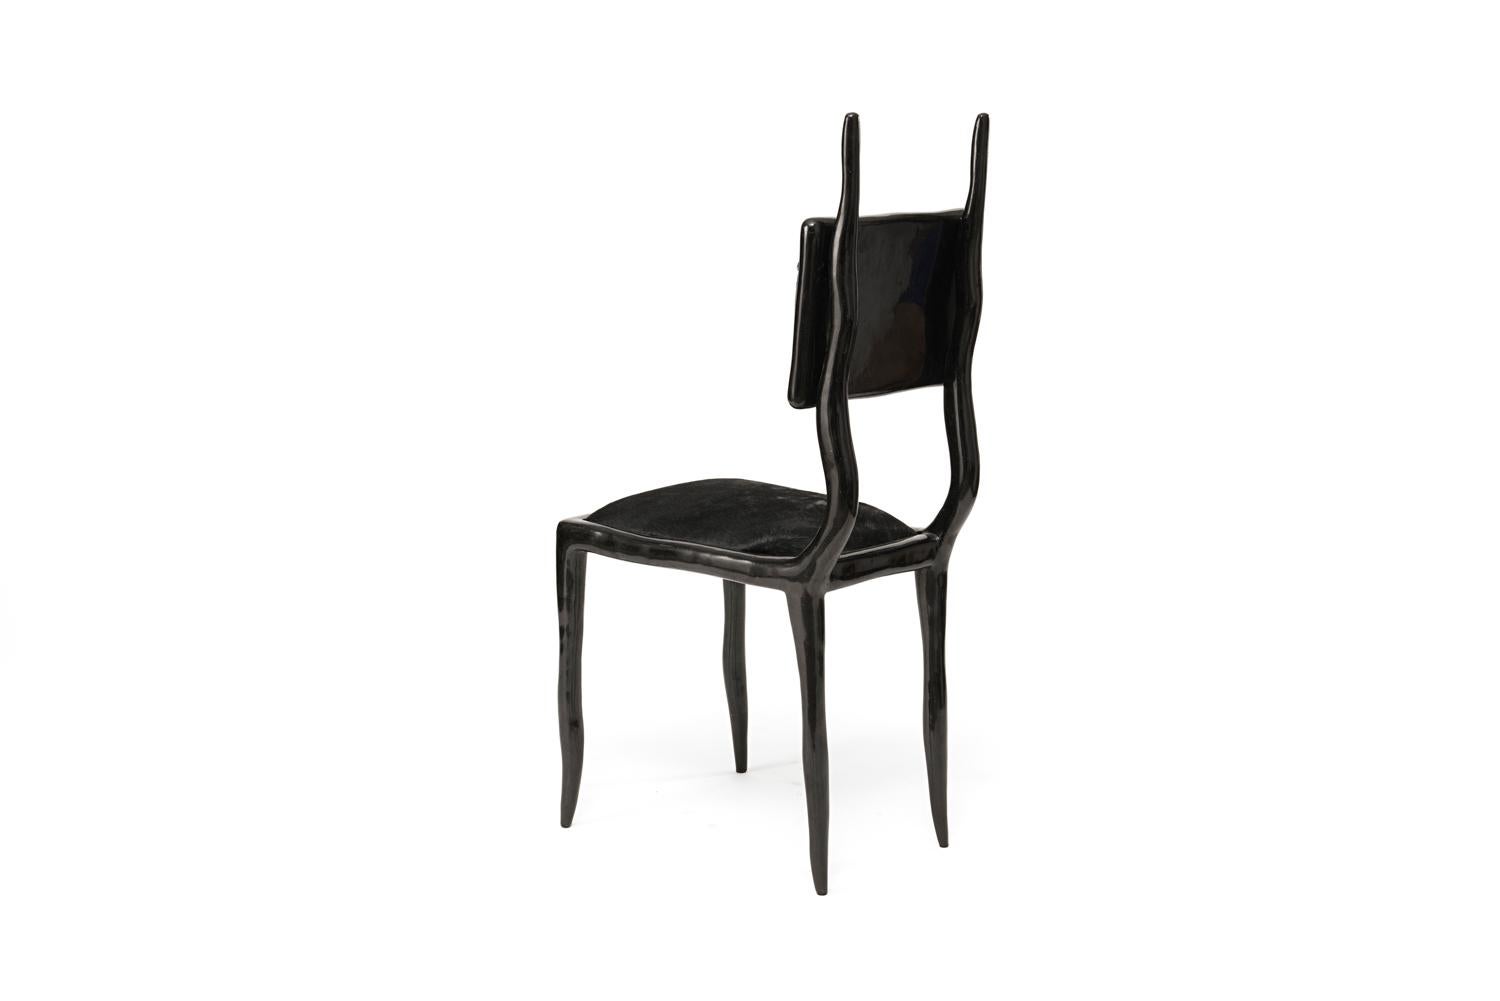 La chaise Eden, en coque de stylo noire et recouverte de cuir de veau noir, apporte l'équilibre parfait entre fantaisie et modernité à n'importe quel espace. Cette chaise peut être utilisée comme pièce d'entrée ou dramatisée autour d'une table de